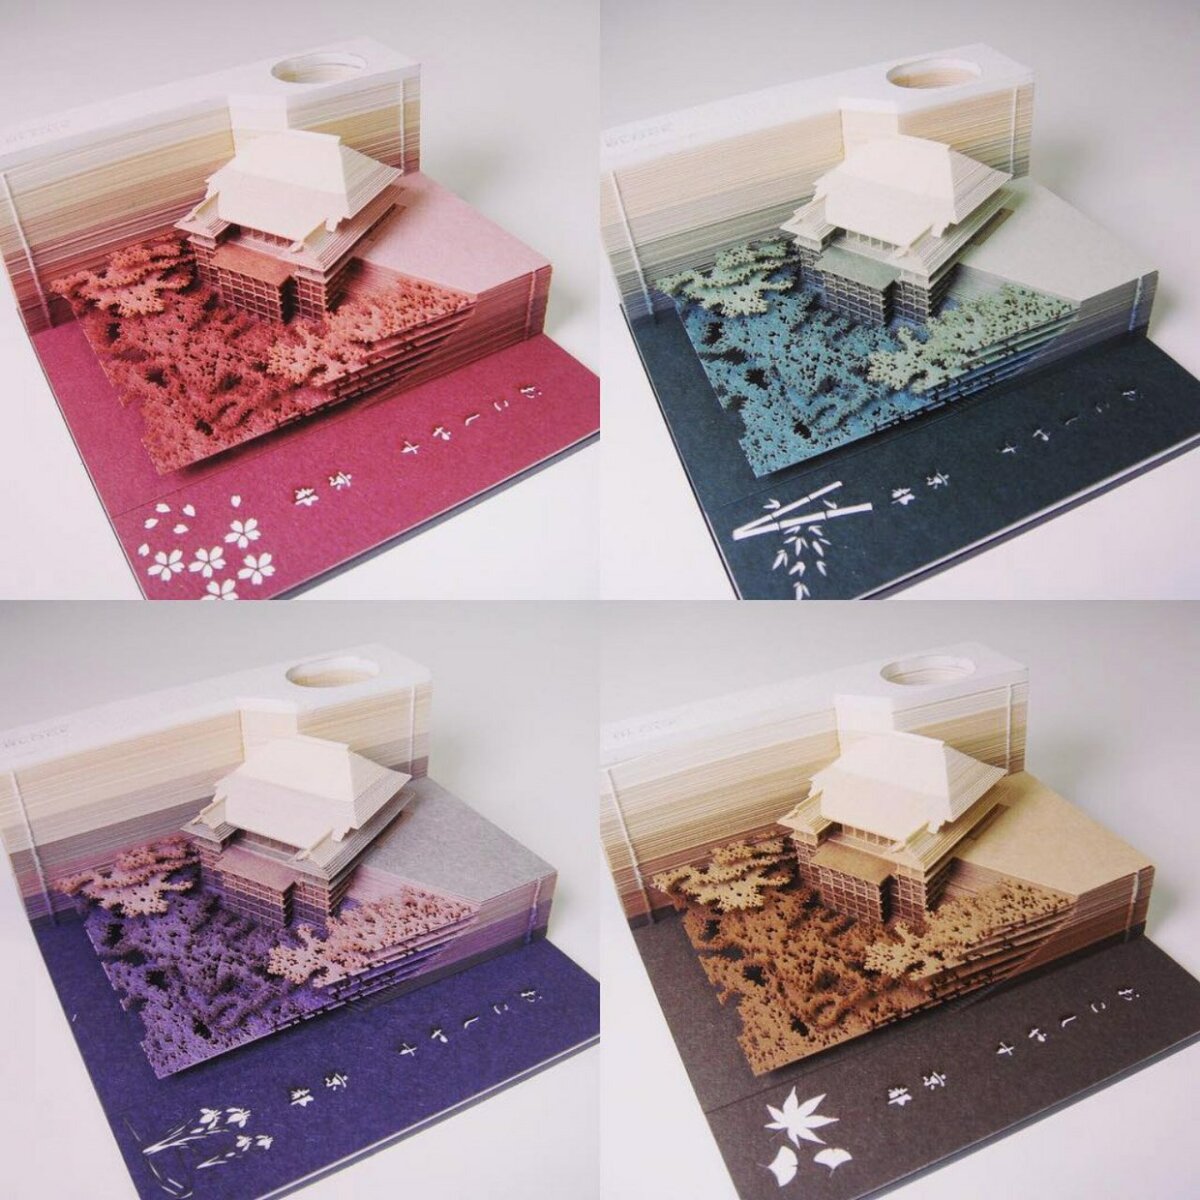 Удивительные блокноты из серии OMOSHIROI BLOCK. Они превращаются в бумажные миниатюры! 😲